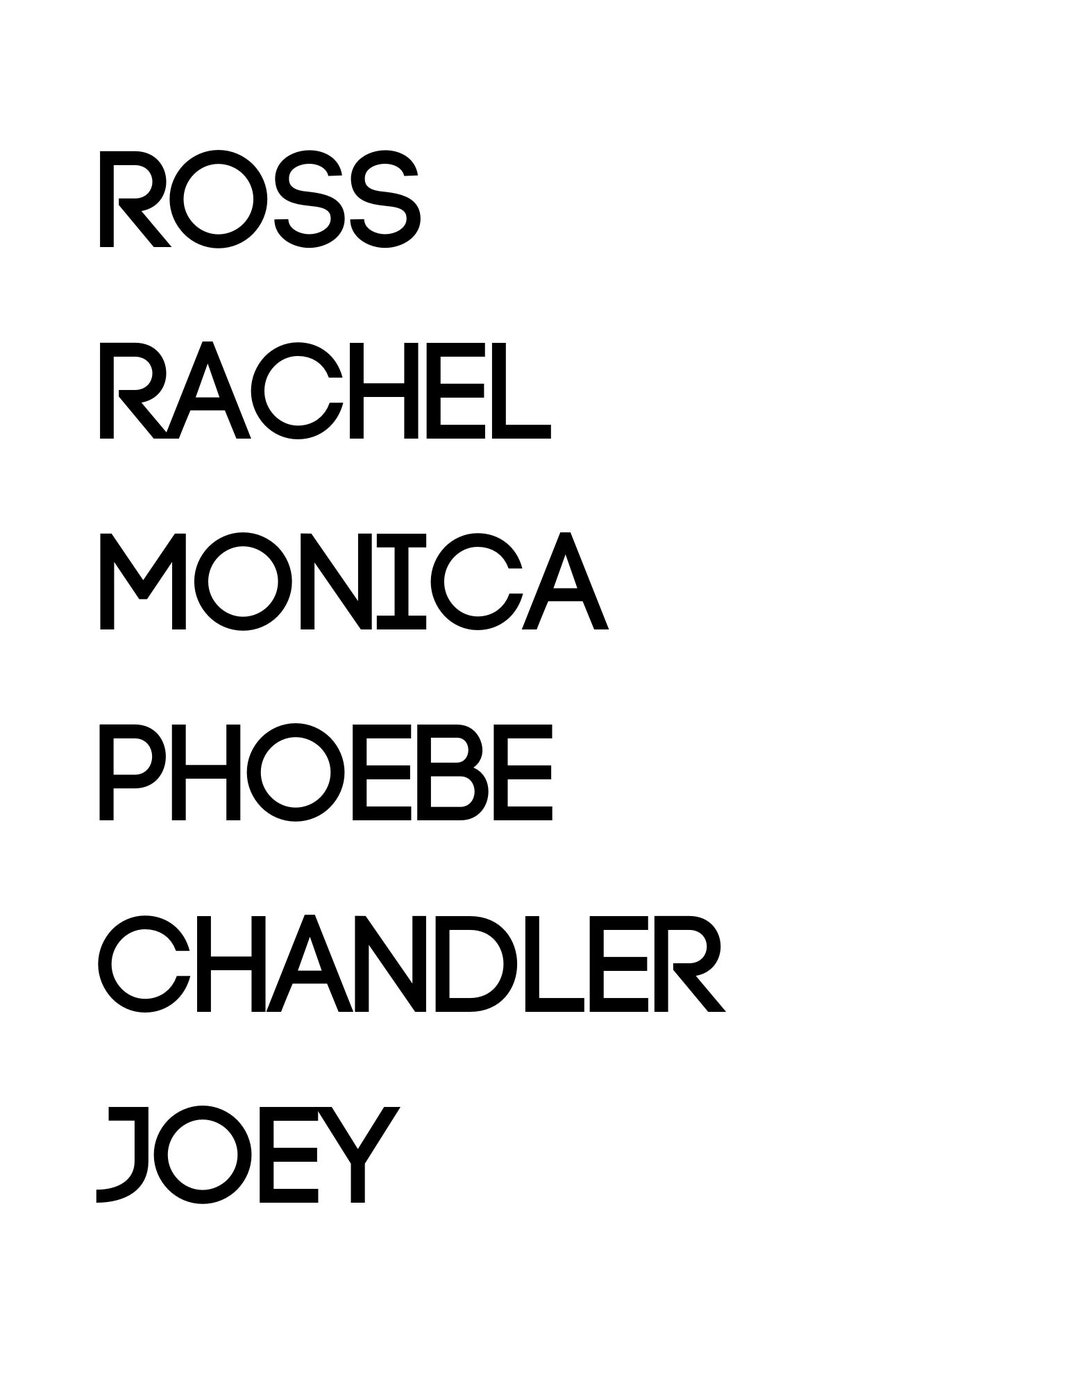 Cast of Friends Names SVG, PNG, JPG and More Digital Download, Digital ...